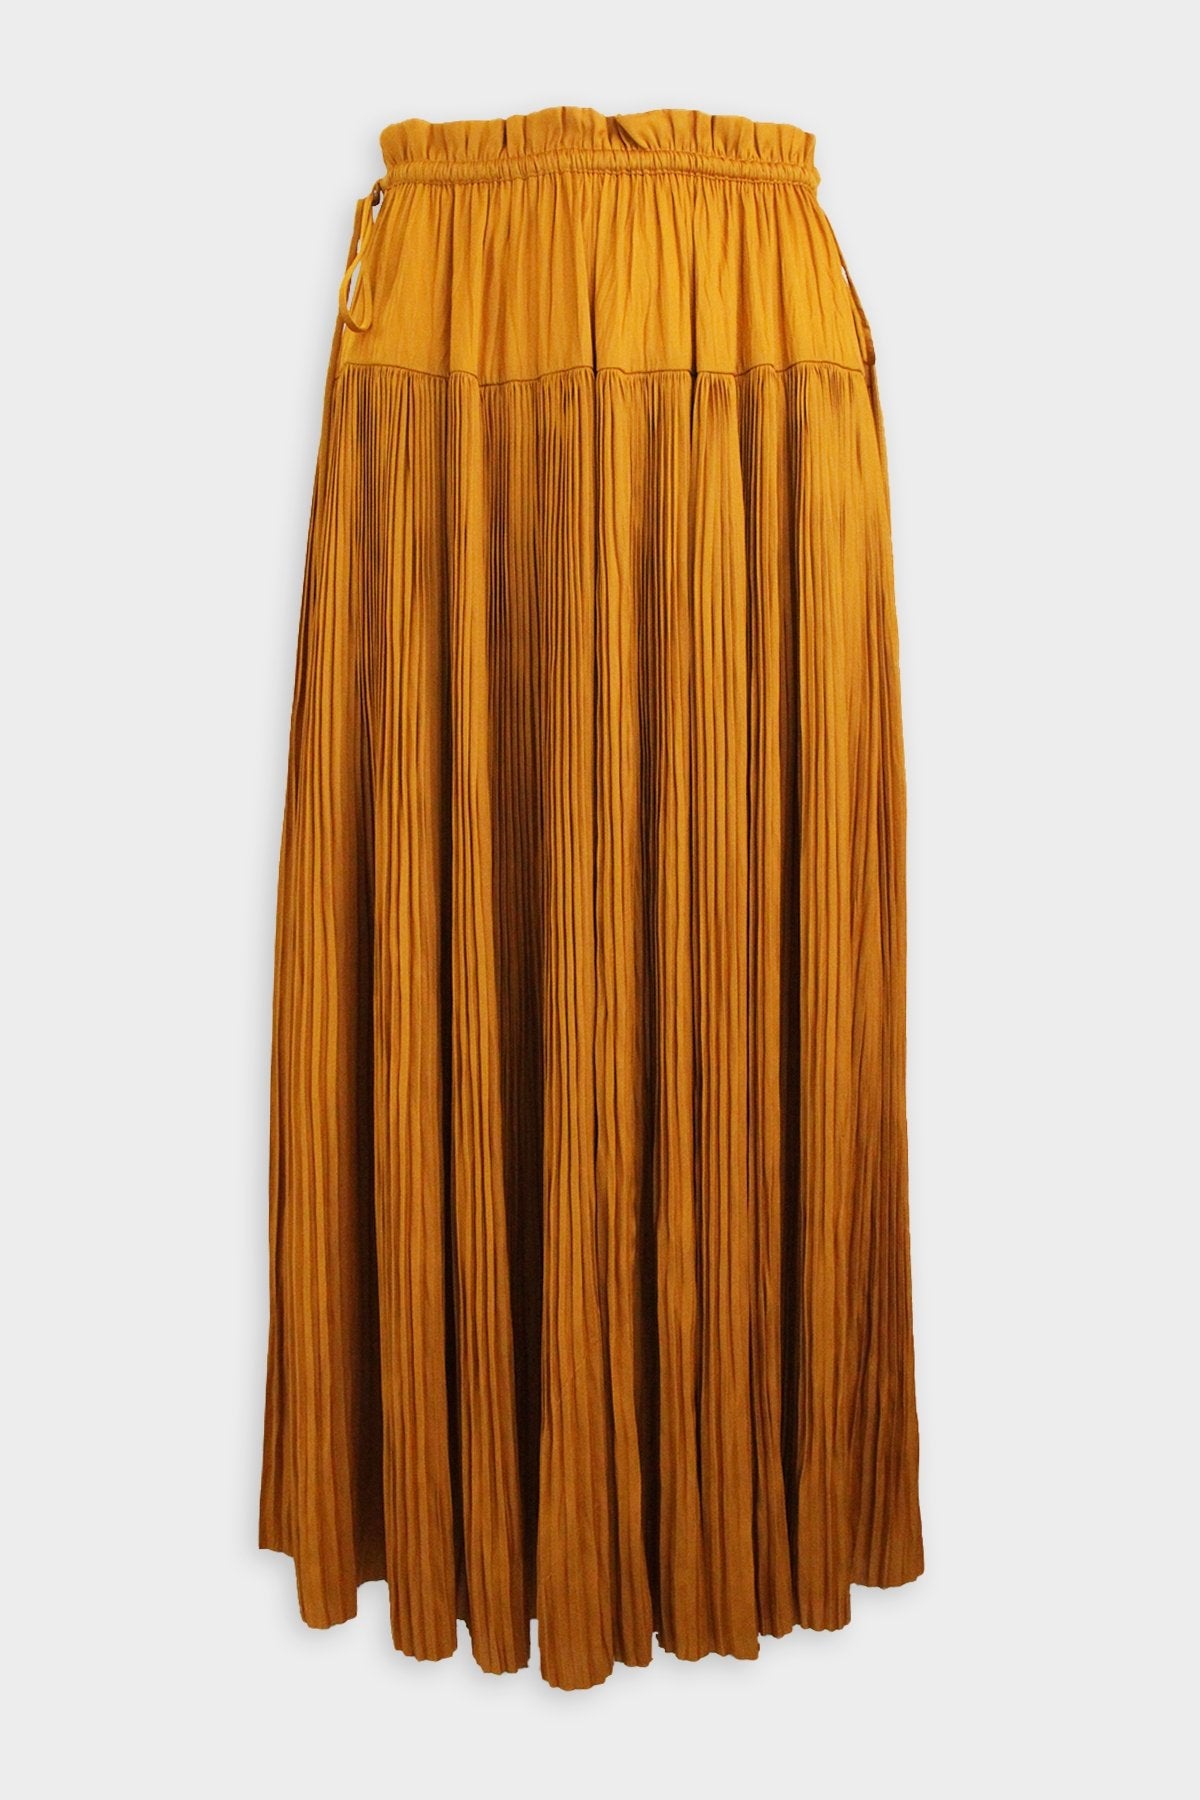 Wren Skirt in Goldenrod - shop-olivia.com